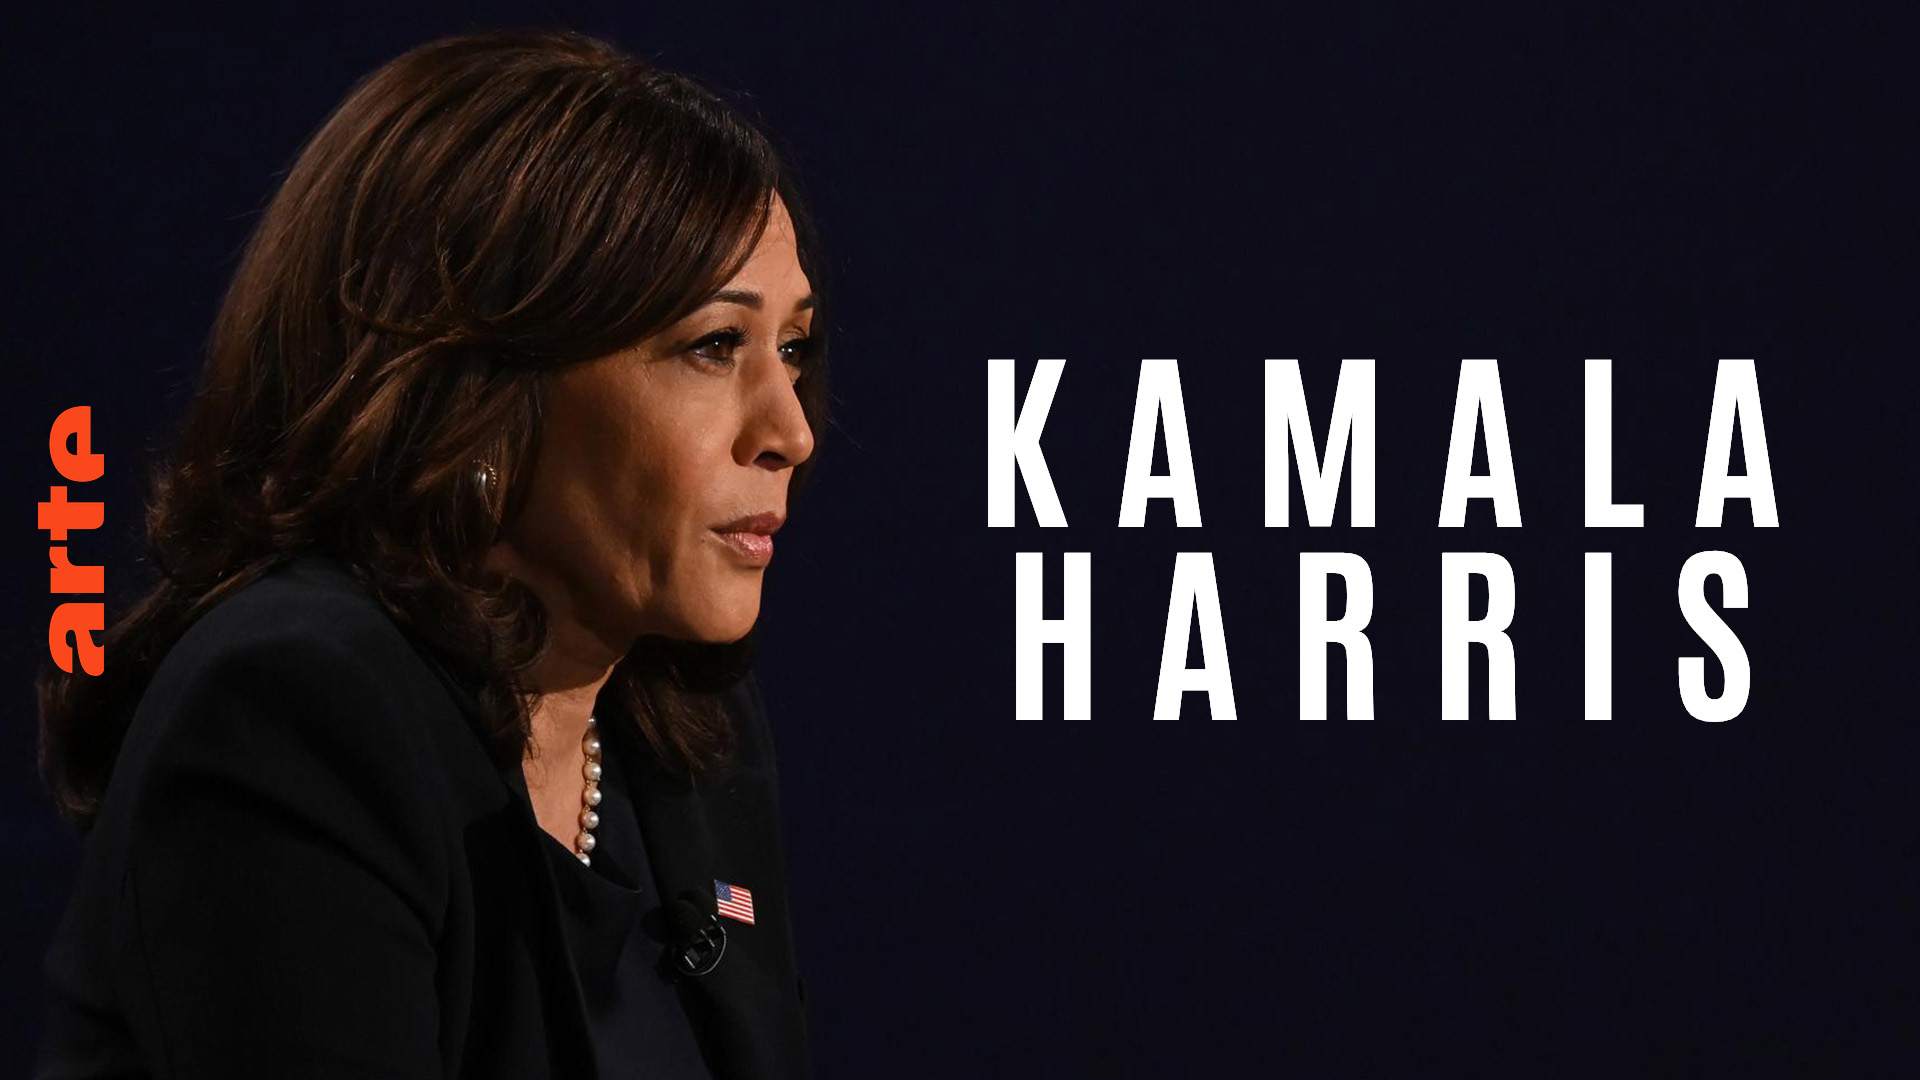 USA : Kamala Harris, ihr Aufstieg in Kalifornien